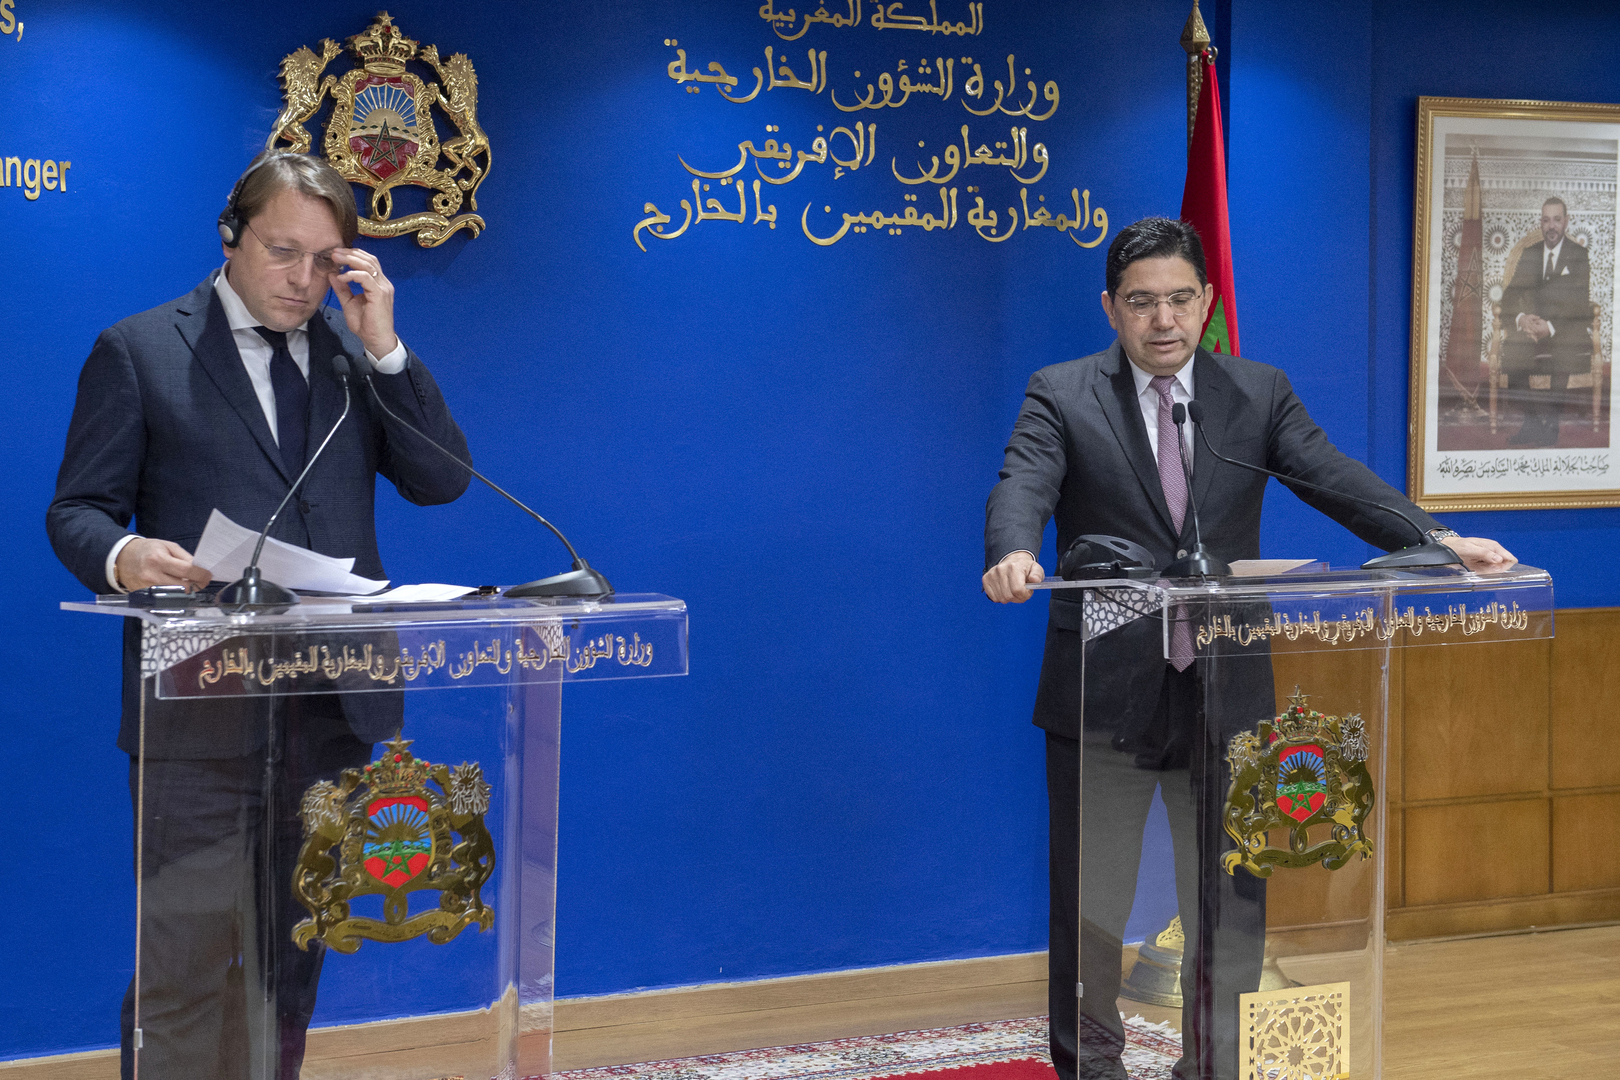 المغرب والاتحاد الأوروبي يعتزمان توسيع شراكتهما لتشمل إسرائيل